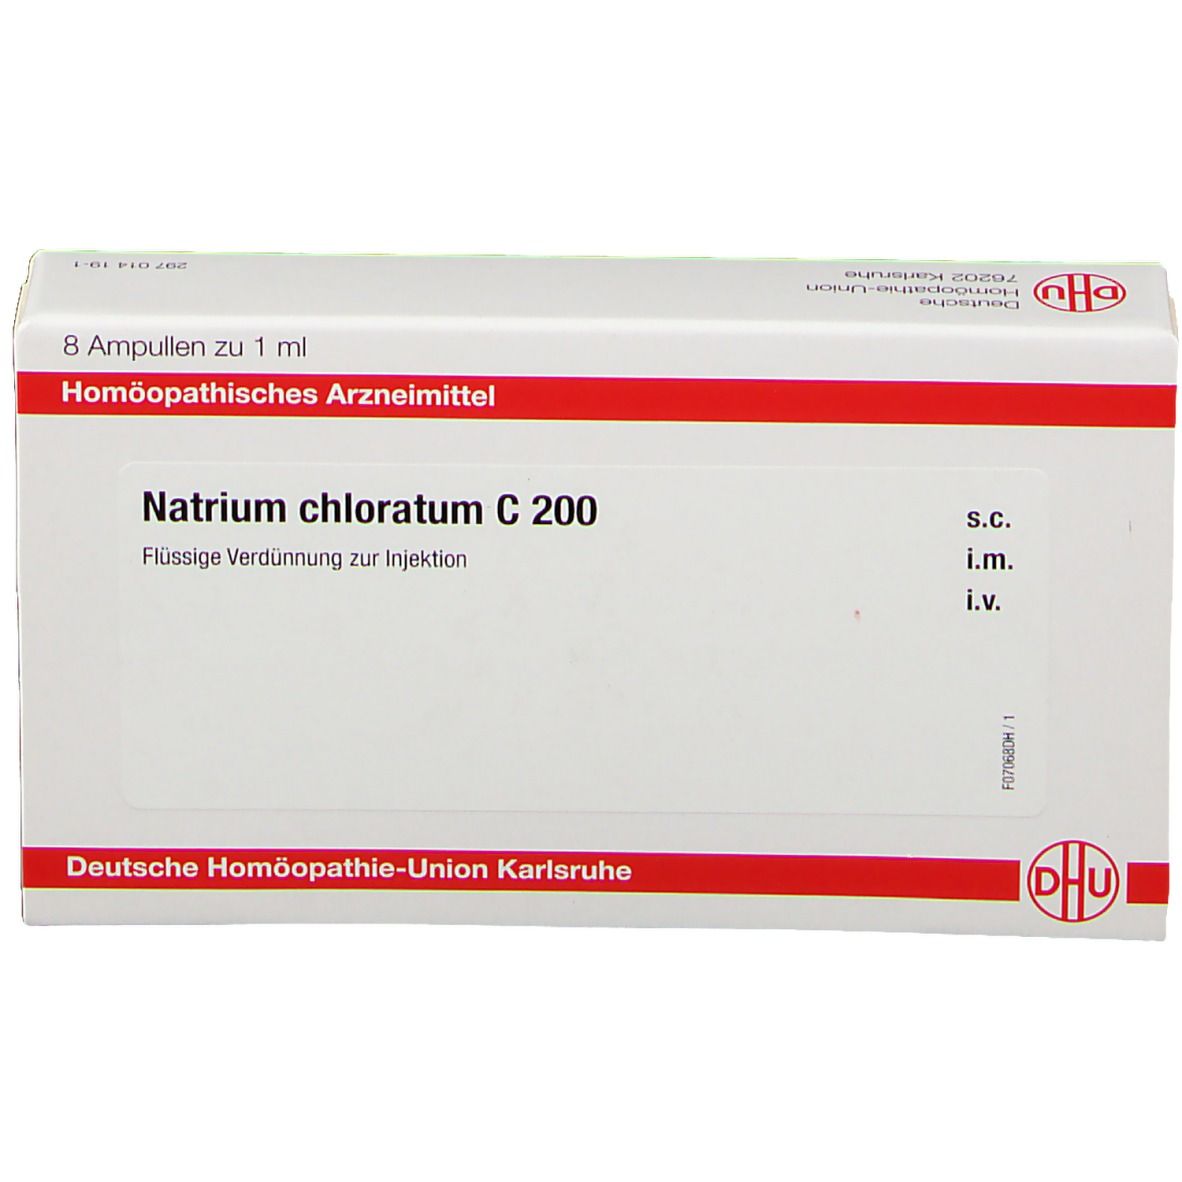 DHU Natrium Chloratum C200